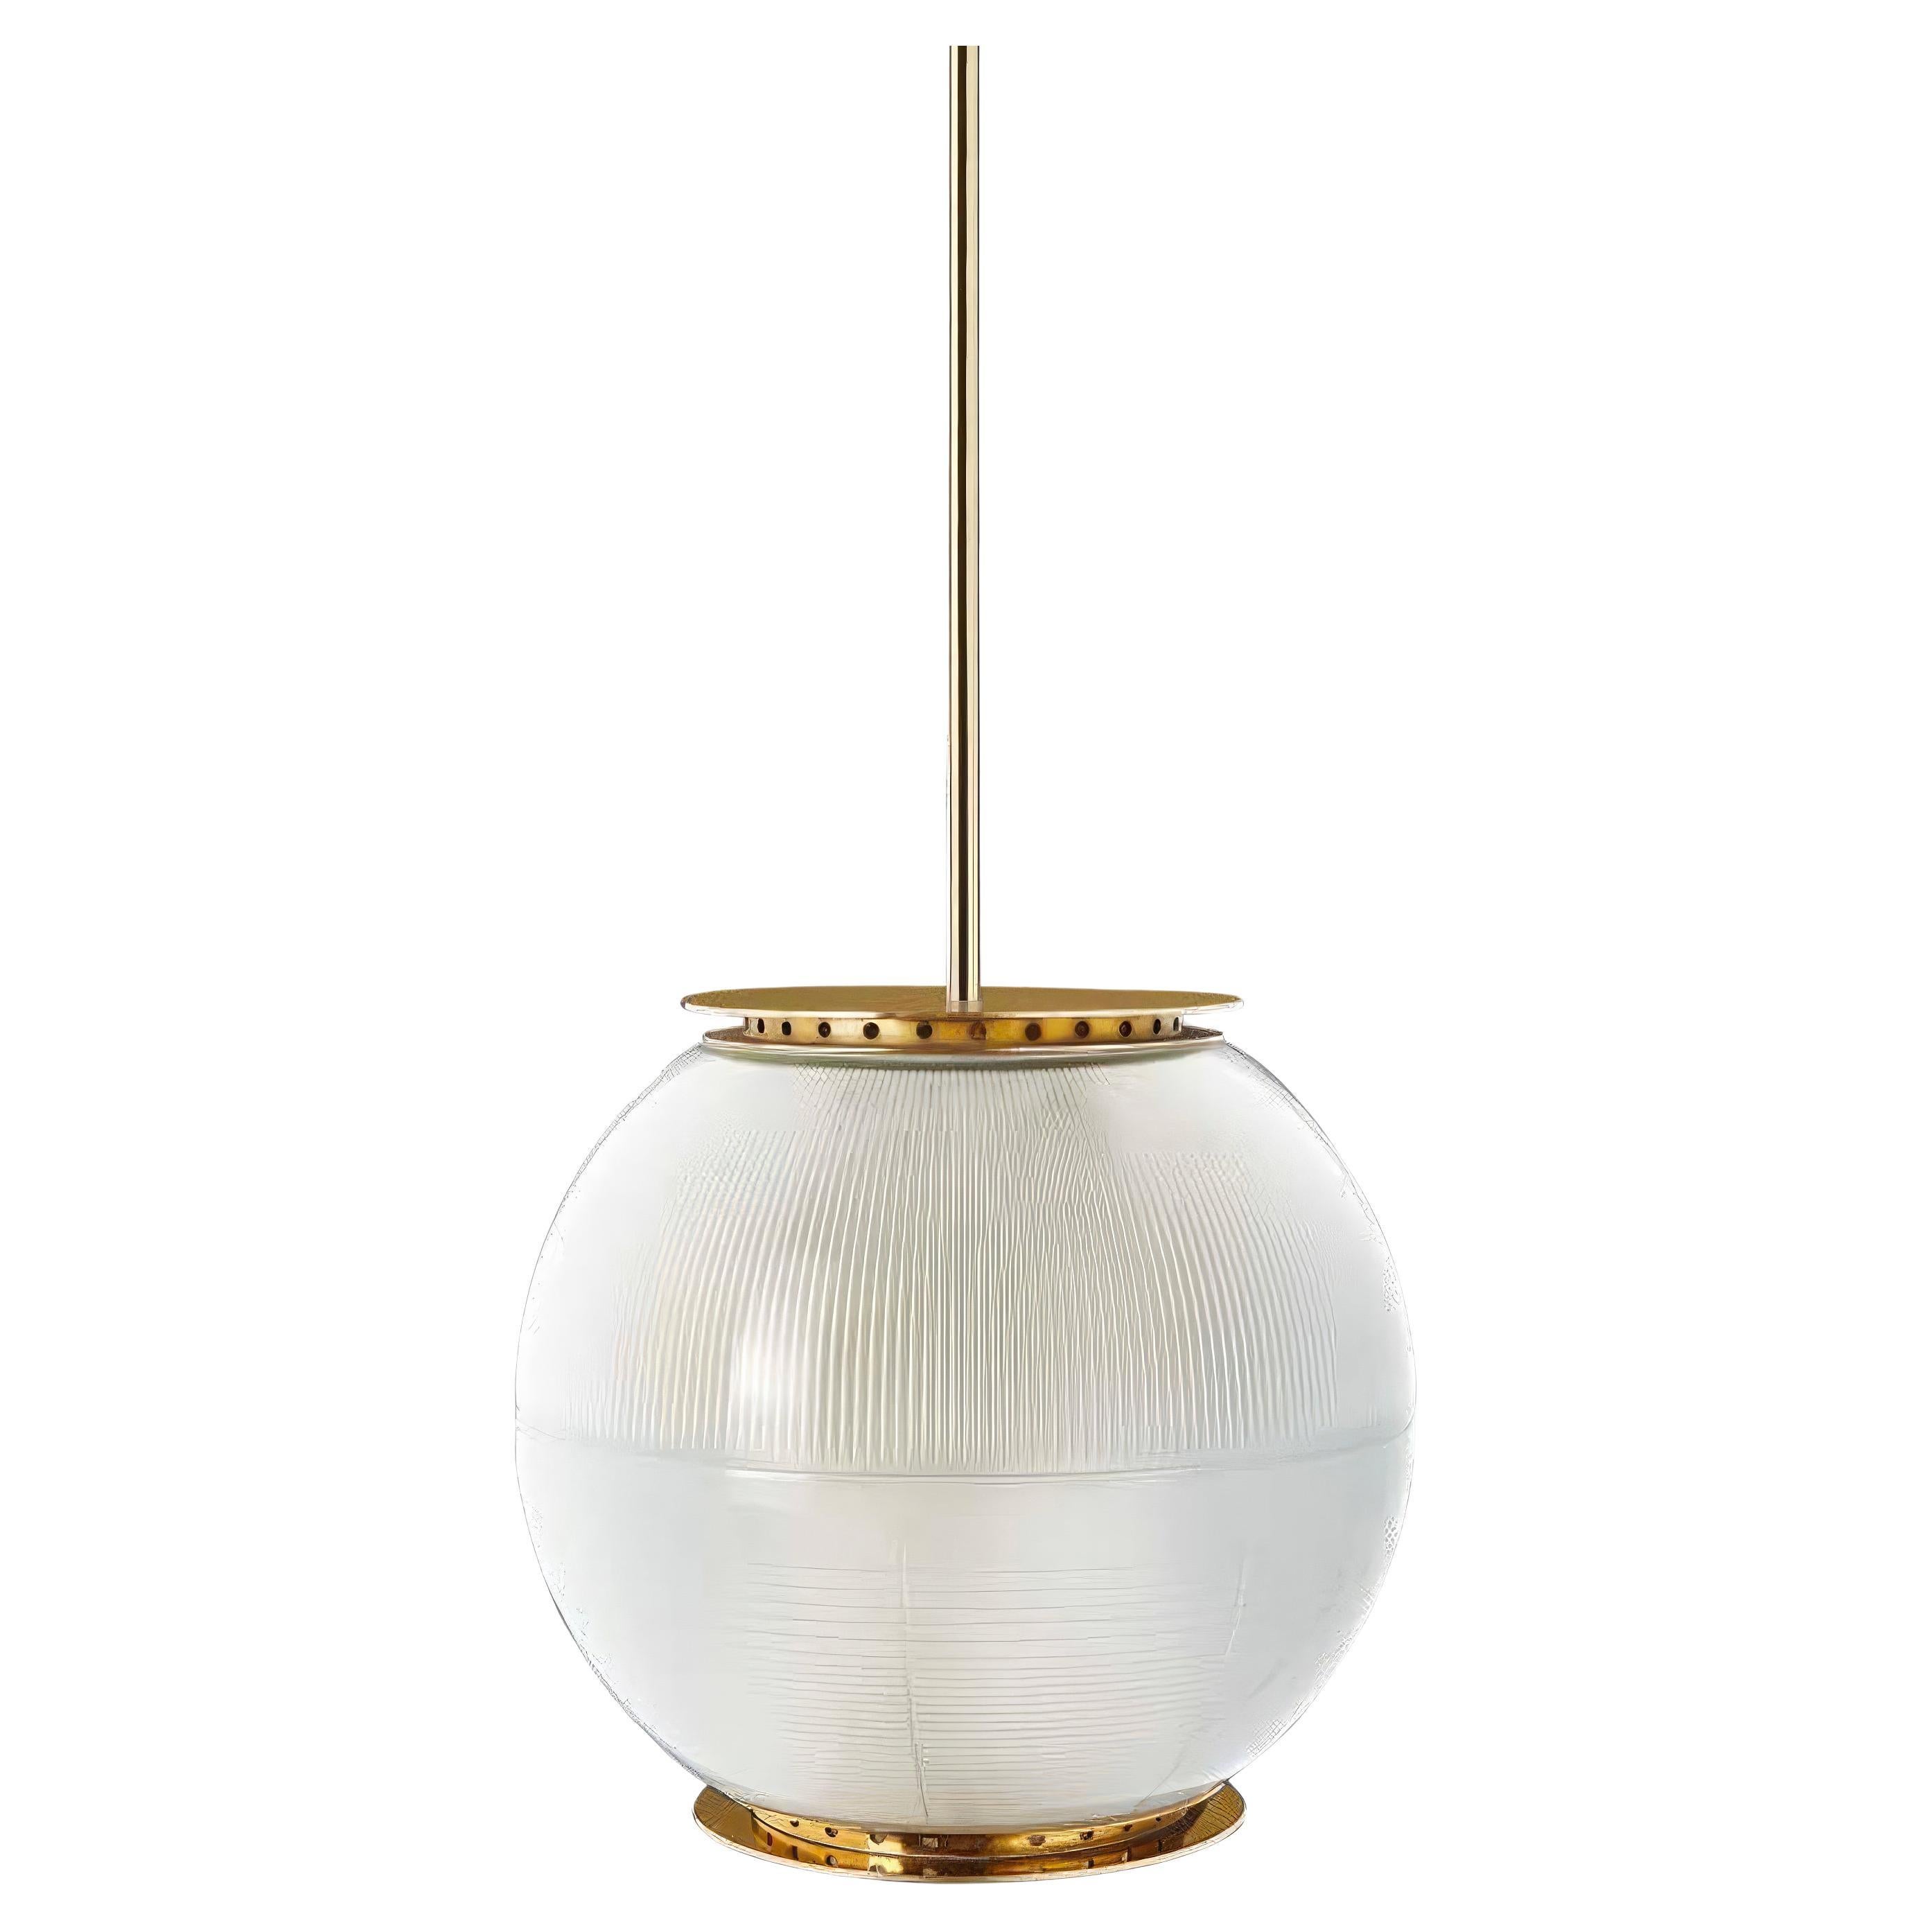 Ignazio Gardella 'Doppio Vetro' Pendant Lamp in Brass and Glass for Tato Italia